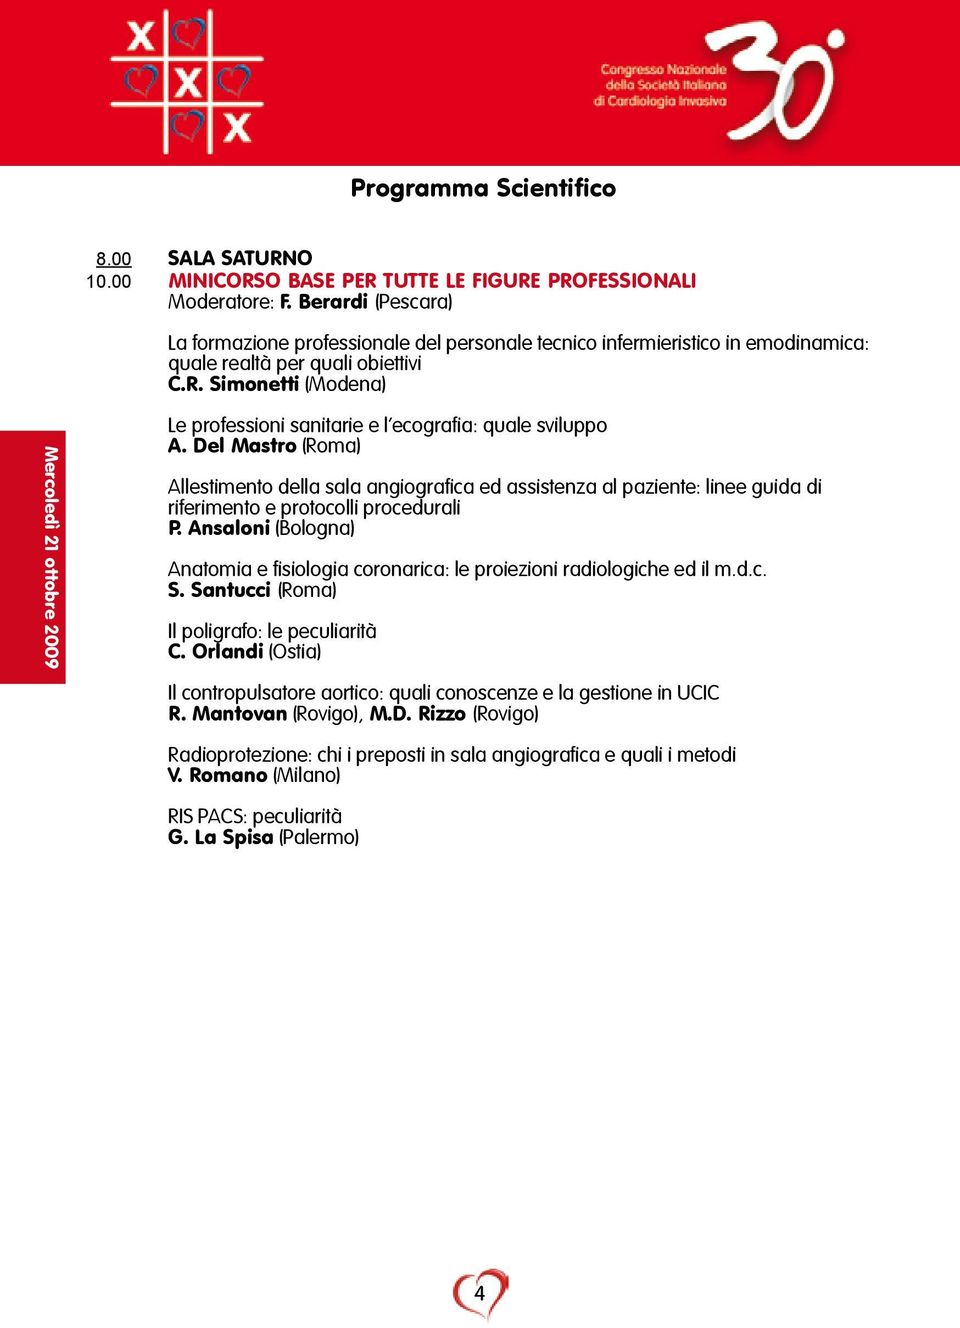 Simonetti (Modena) Mercoledì 21 ottobre 2009 Le professioni sanitarie e l ecografia: quale sviluppo A.